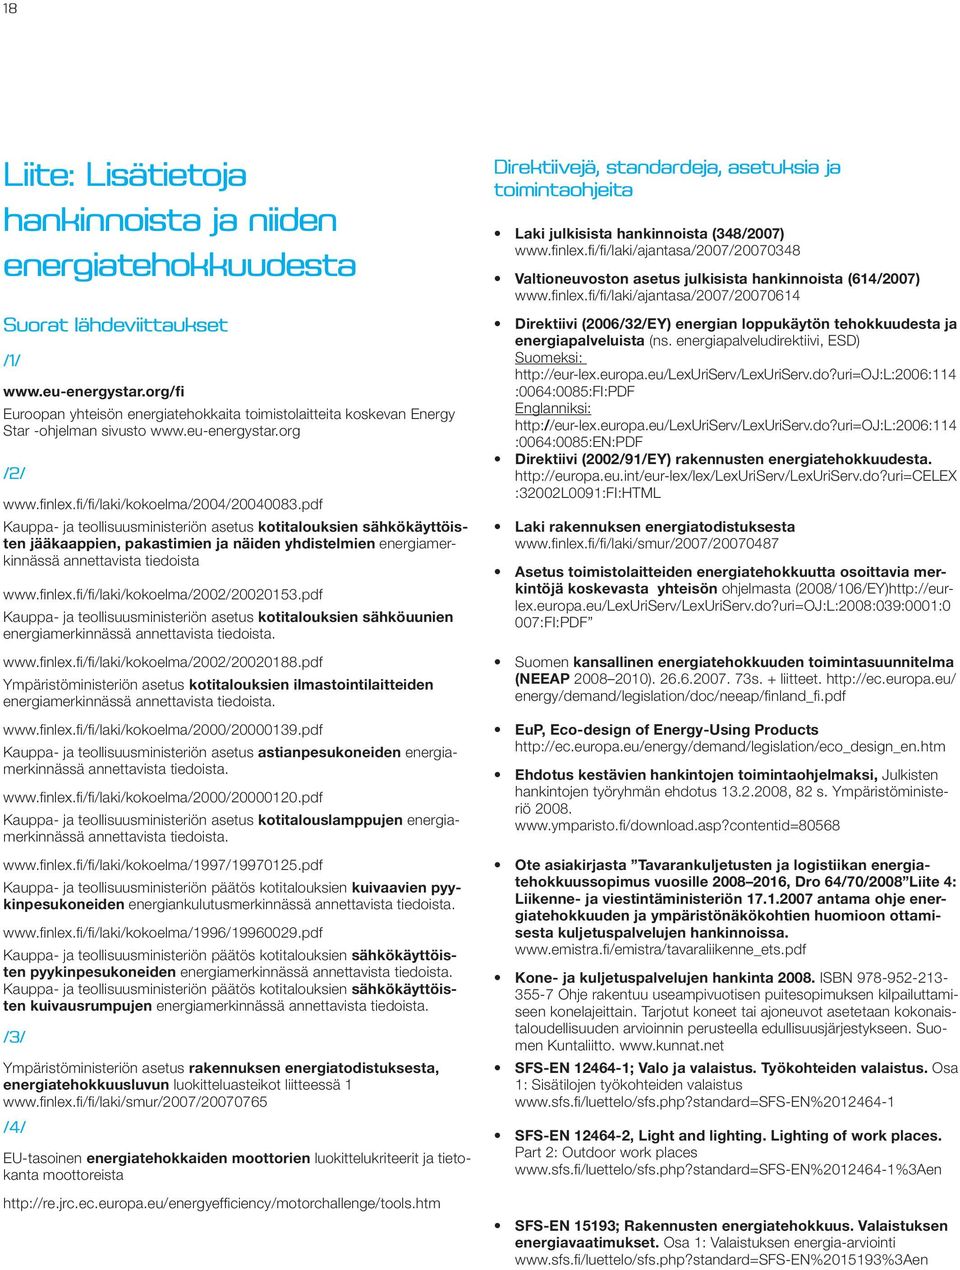 pdf Kauppa- ja teollisuusministeriön asetus kotitalouksien sähkökäyttöisten jääkaappien, pakastimien ja näiden yhdistelmien energiamerkinnässä annettavista tiedoista www.finlex.